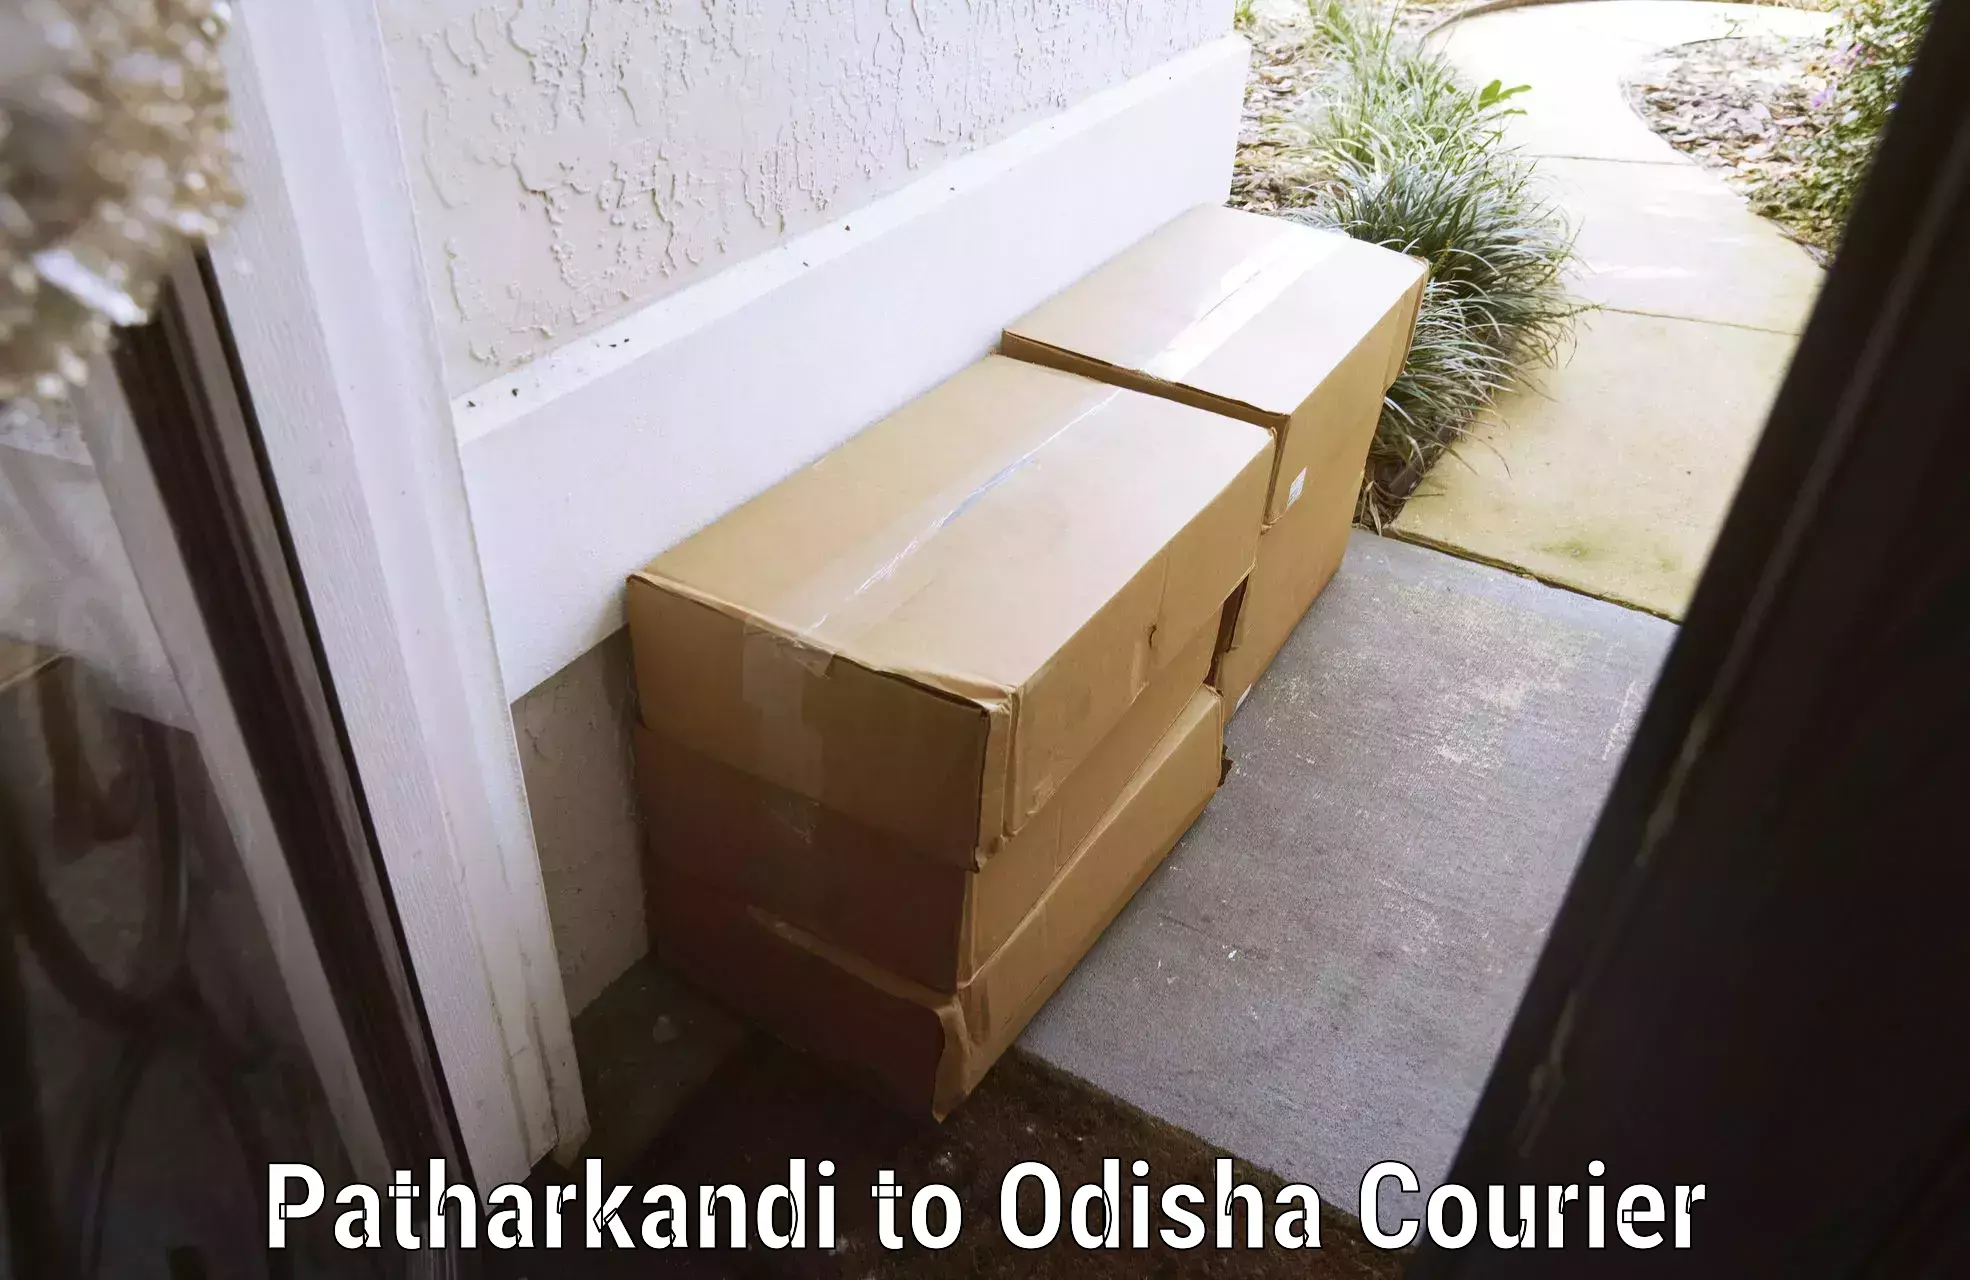 Luggage transit service Patharkandi to Odisha